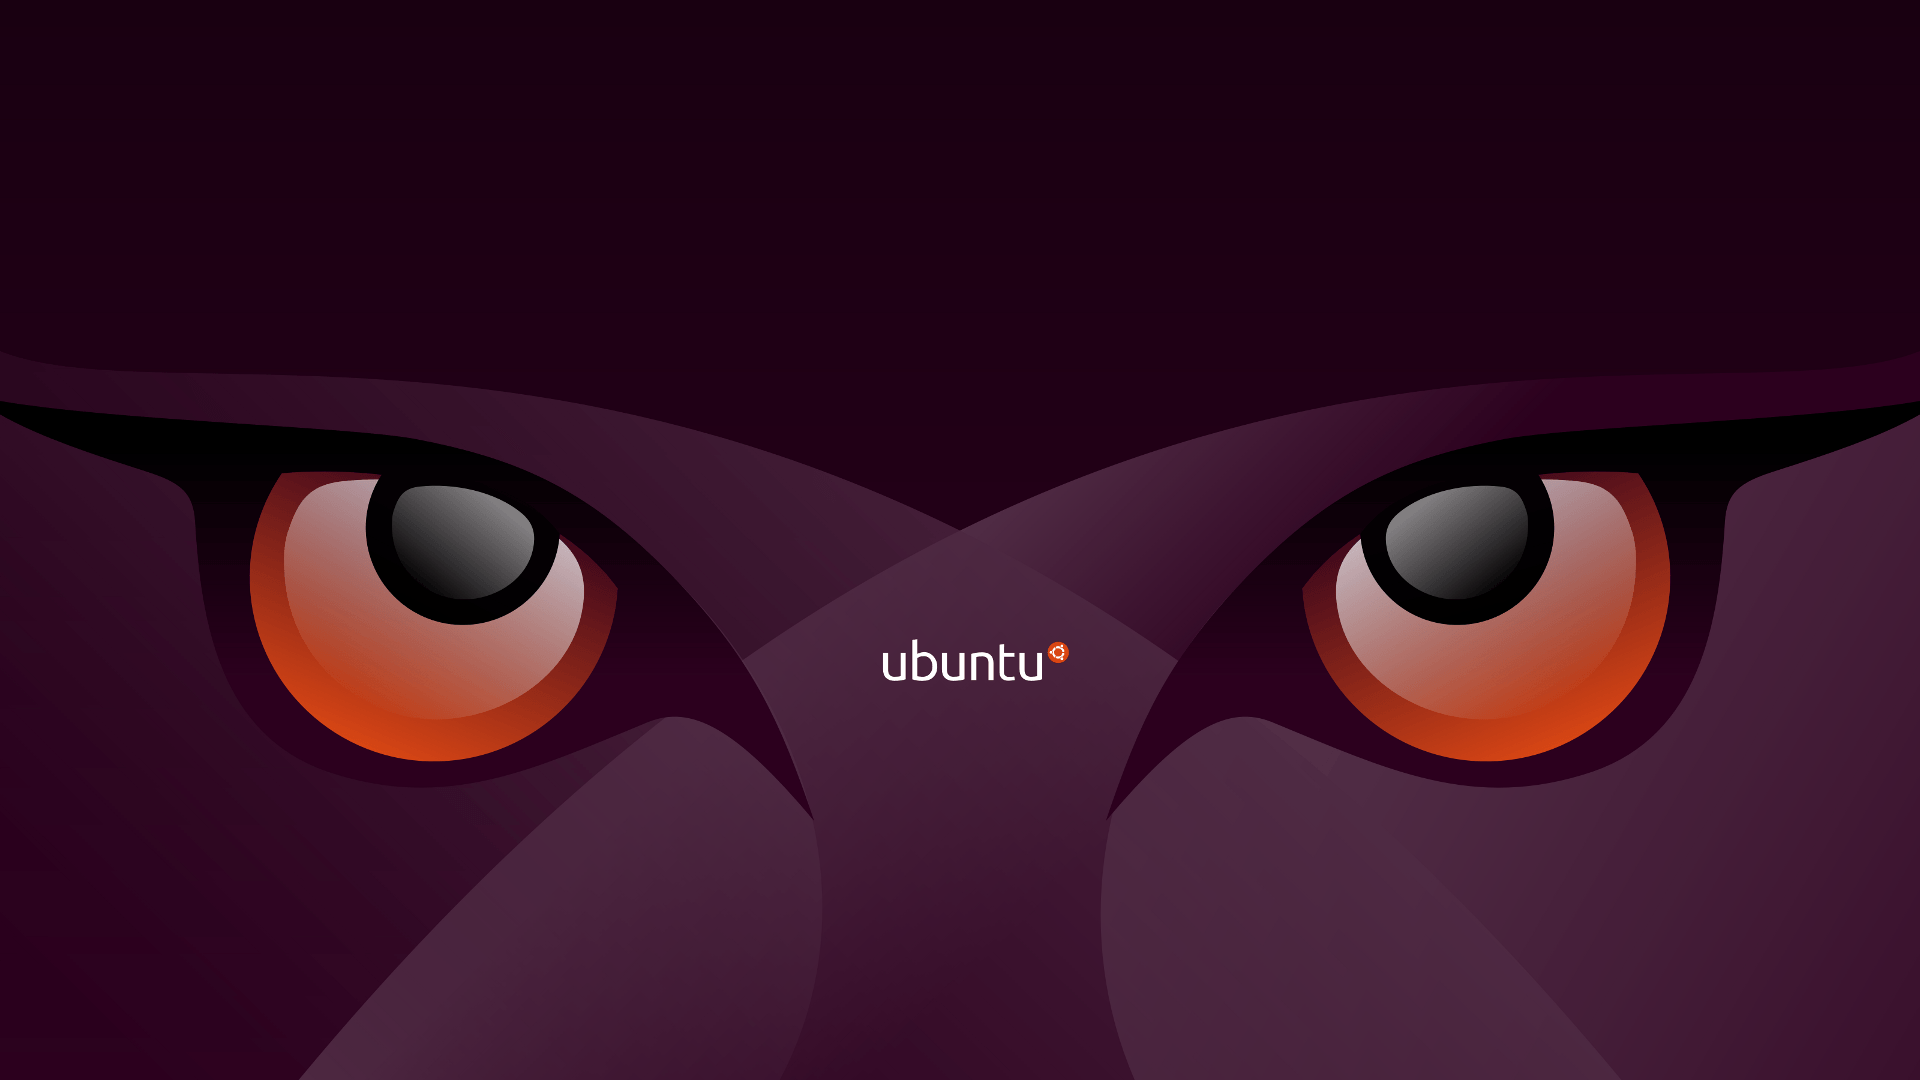 Ubuntu Desktop Wallpaper. HD Wallpaper. Wallpaper